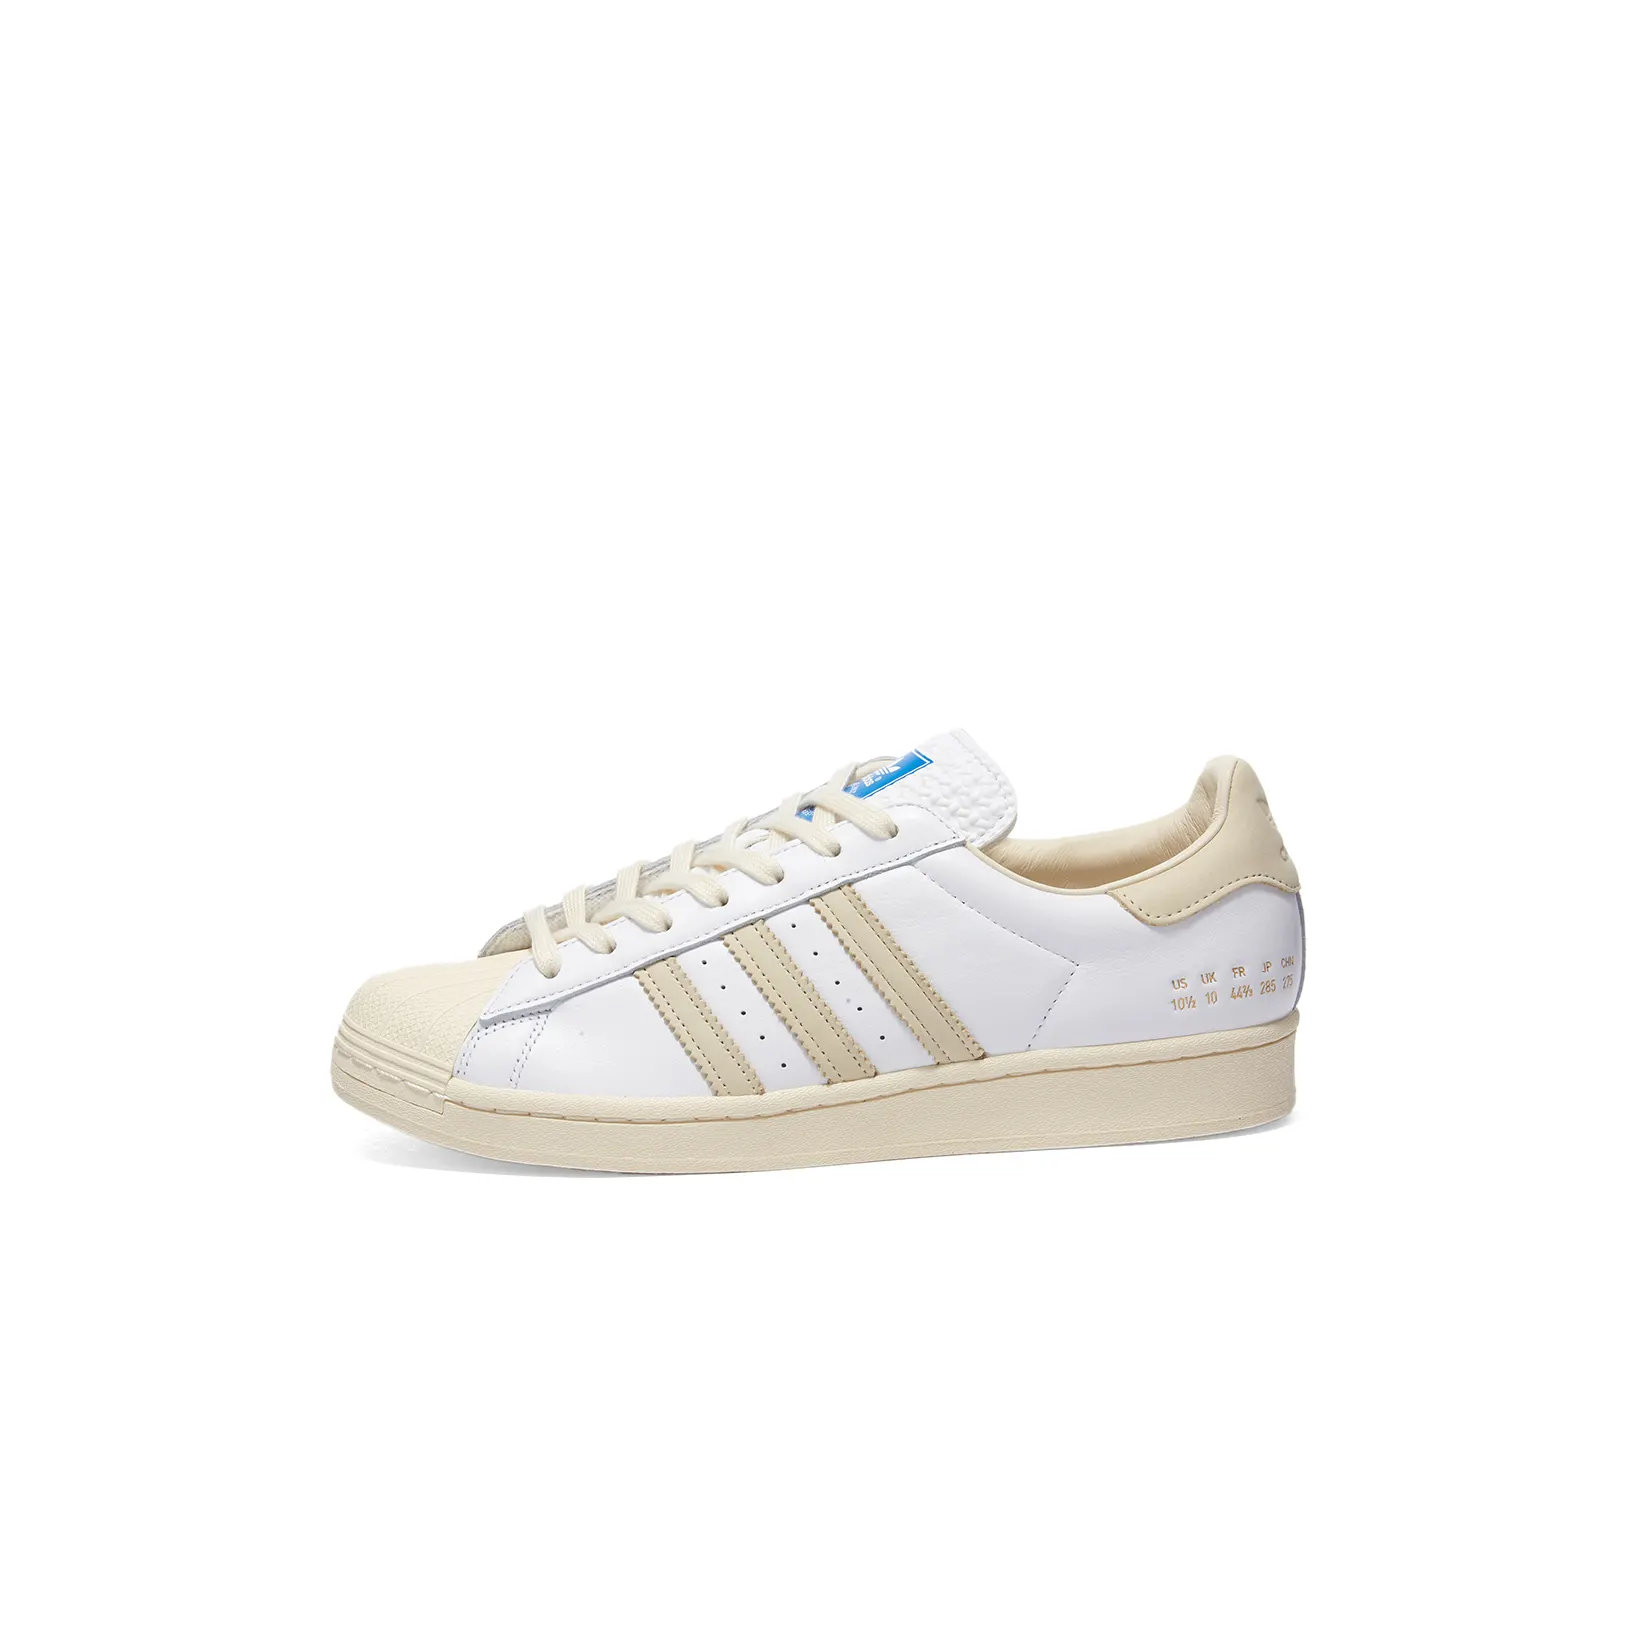 RARE🔥 Adidas Superstar Originals Blue Bird White Leather Shoes Sz